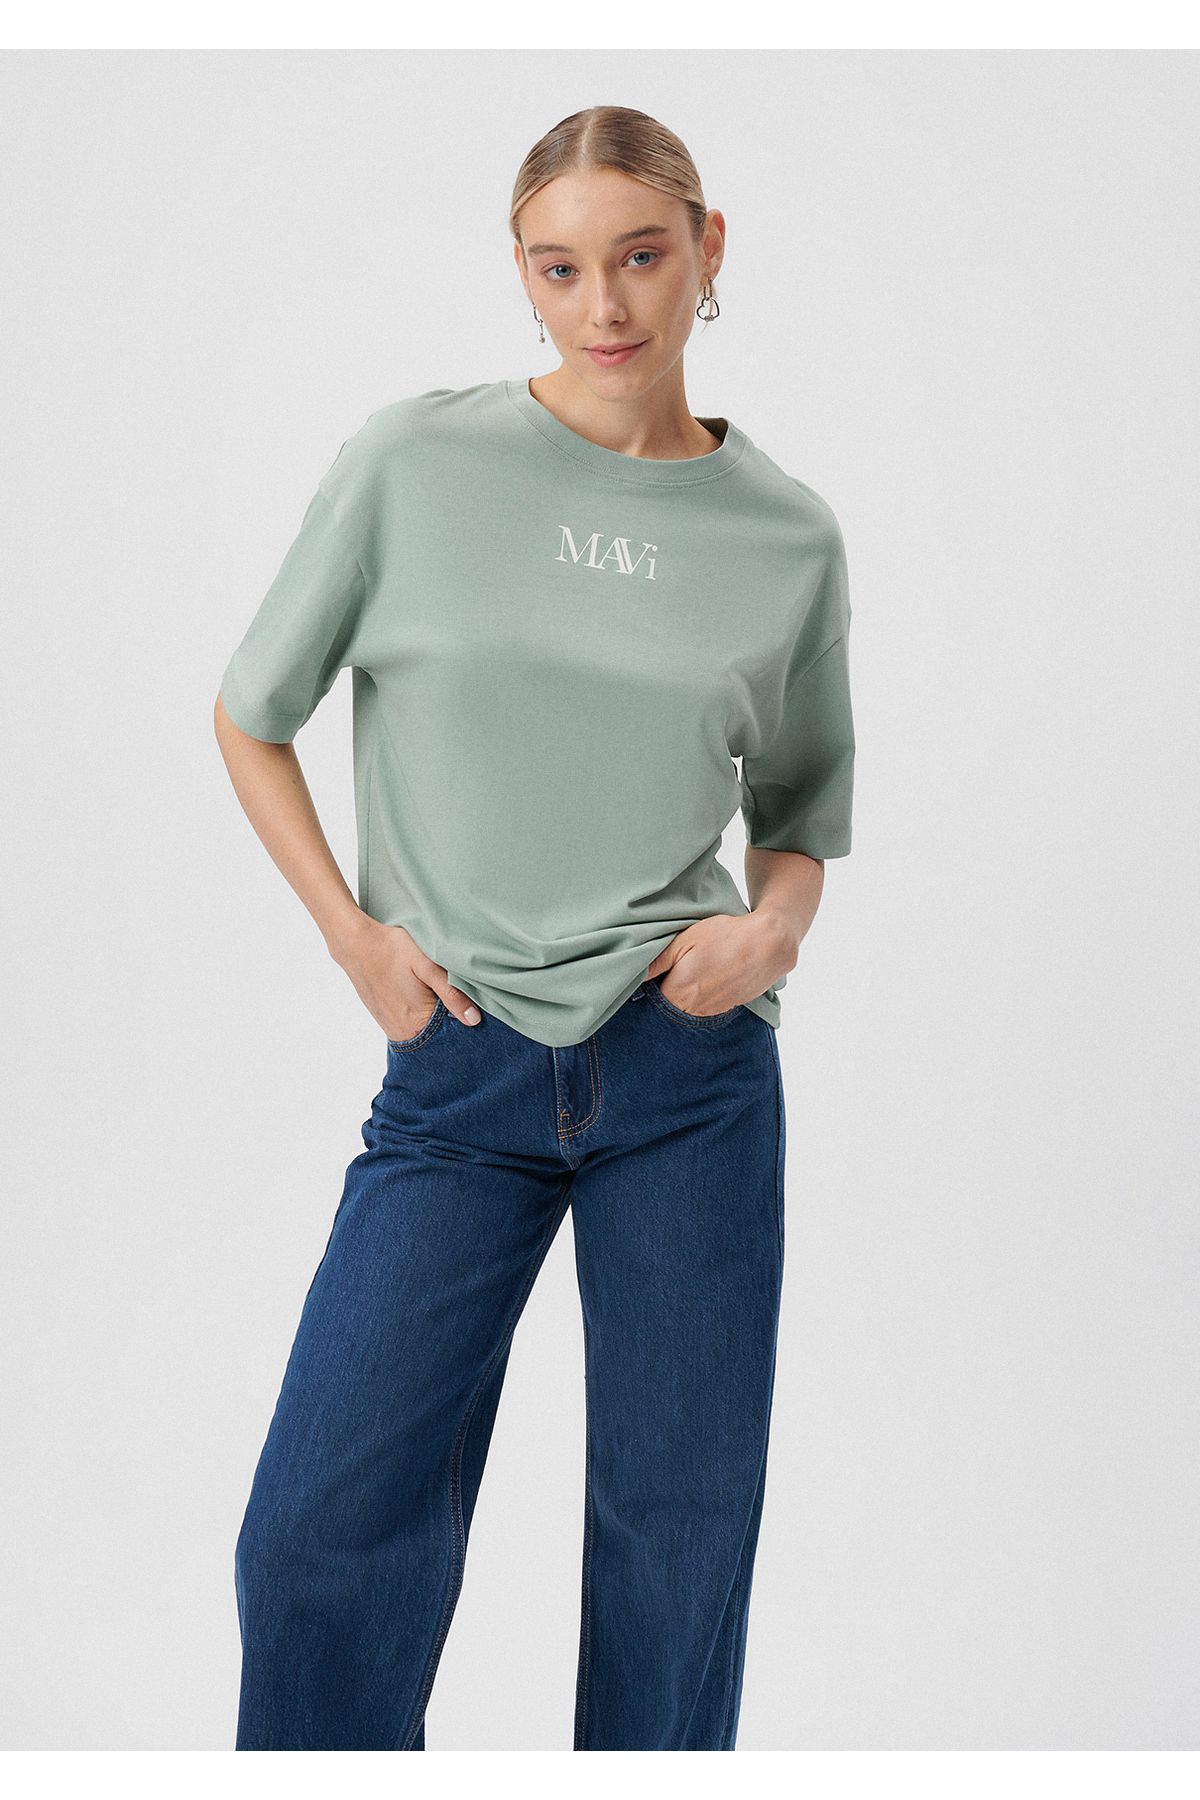 Mavi تی شرت سبز چاپی آرم بزرگ / بخش گسترده 1611593-71787